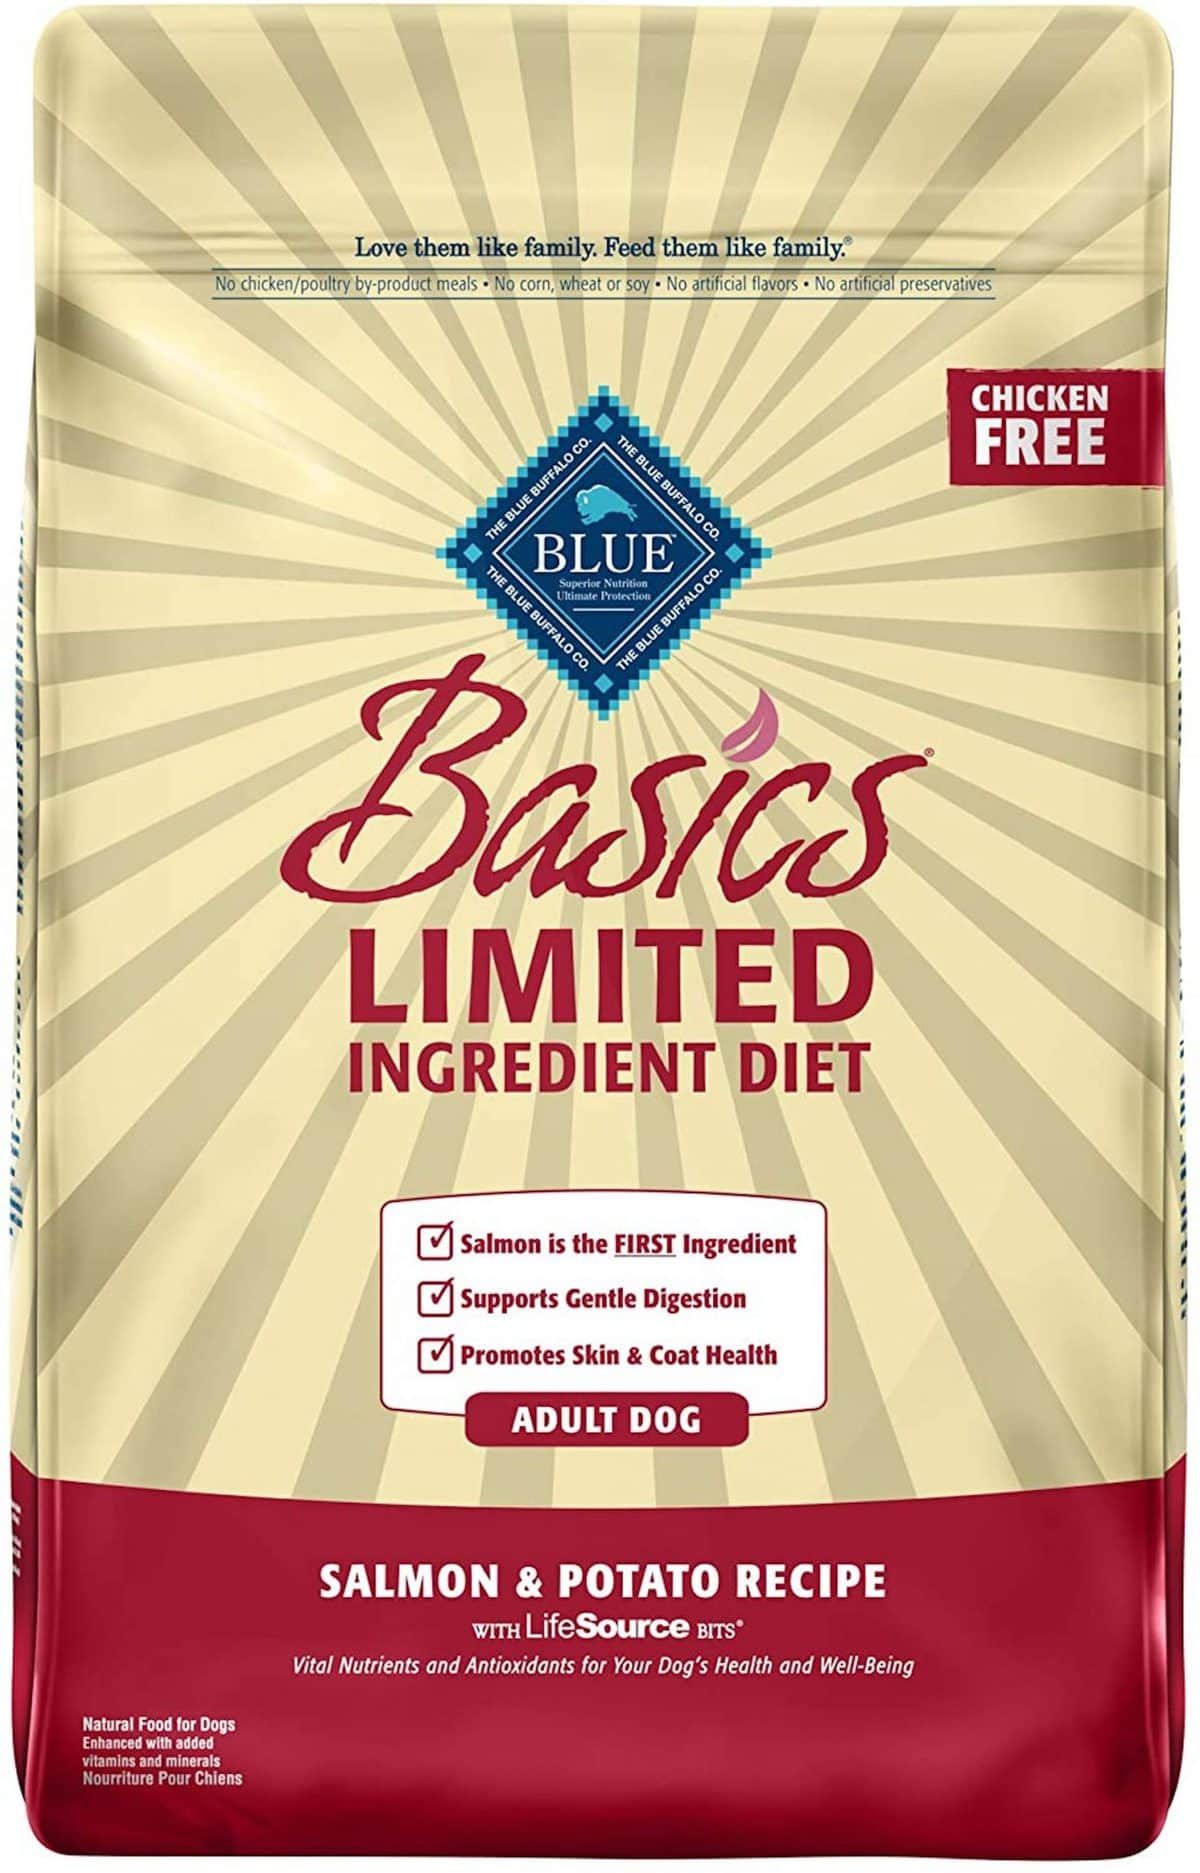 „Blue Buffalo Basics“ riboto ingrediento šunų maistas